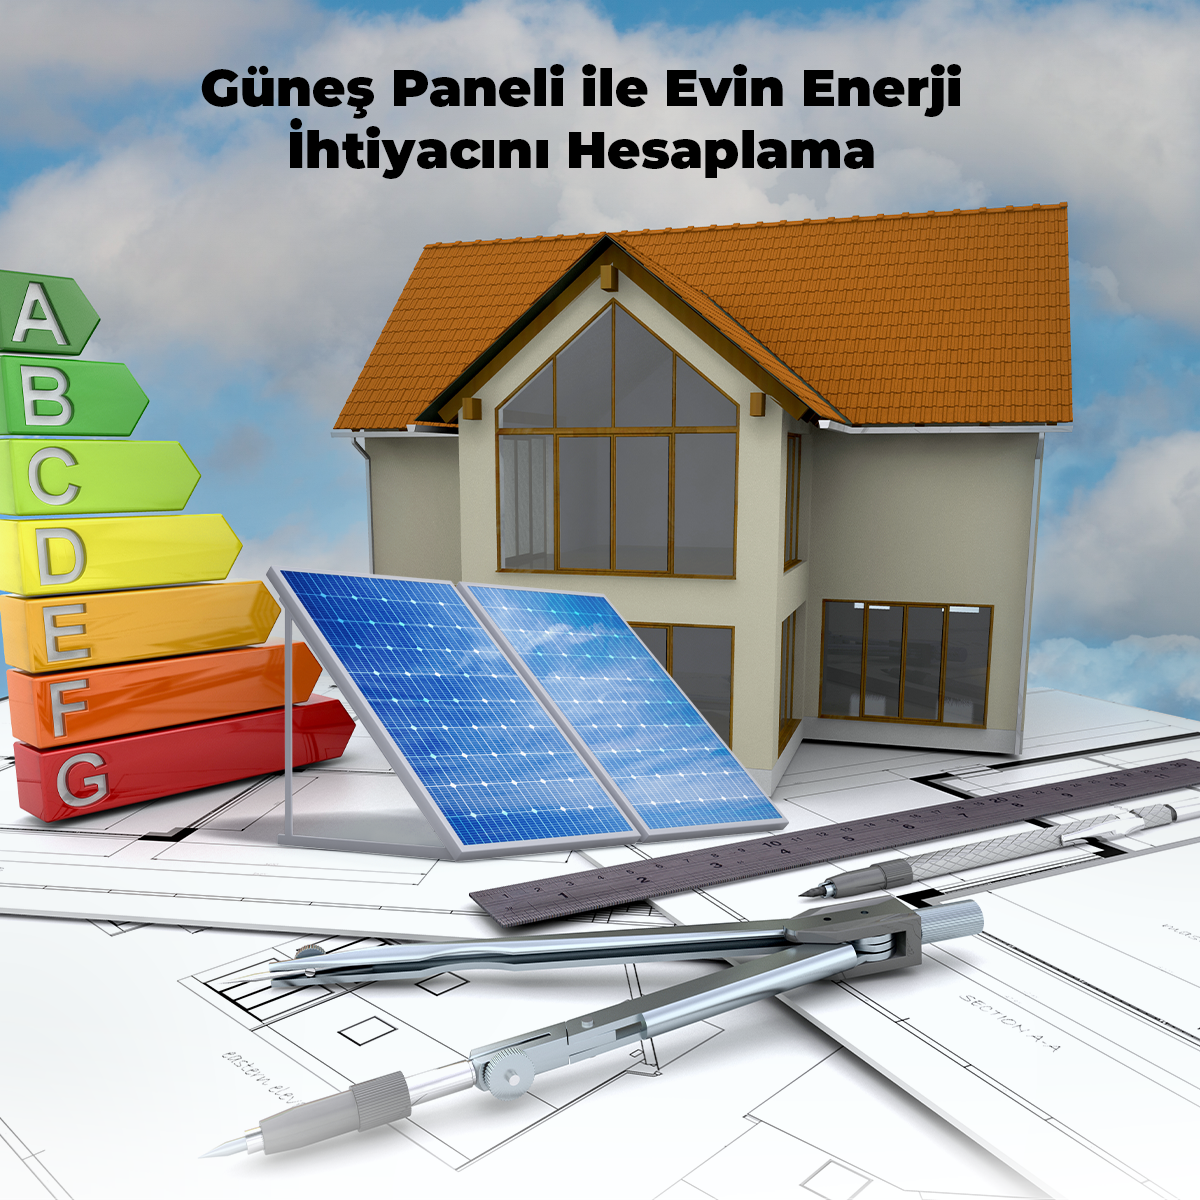 Güneş Paneli ile Evin Enerji İhtiyacını Hesaplama